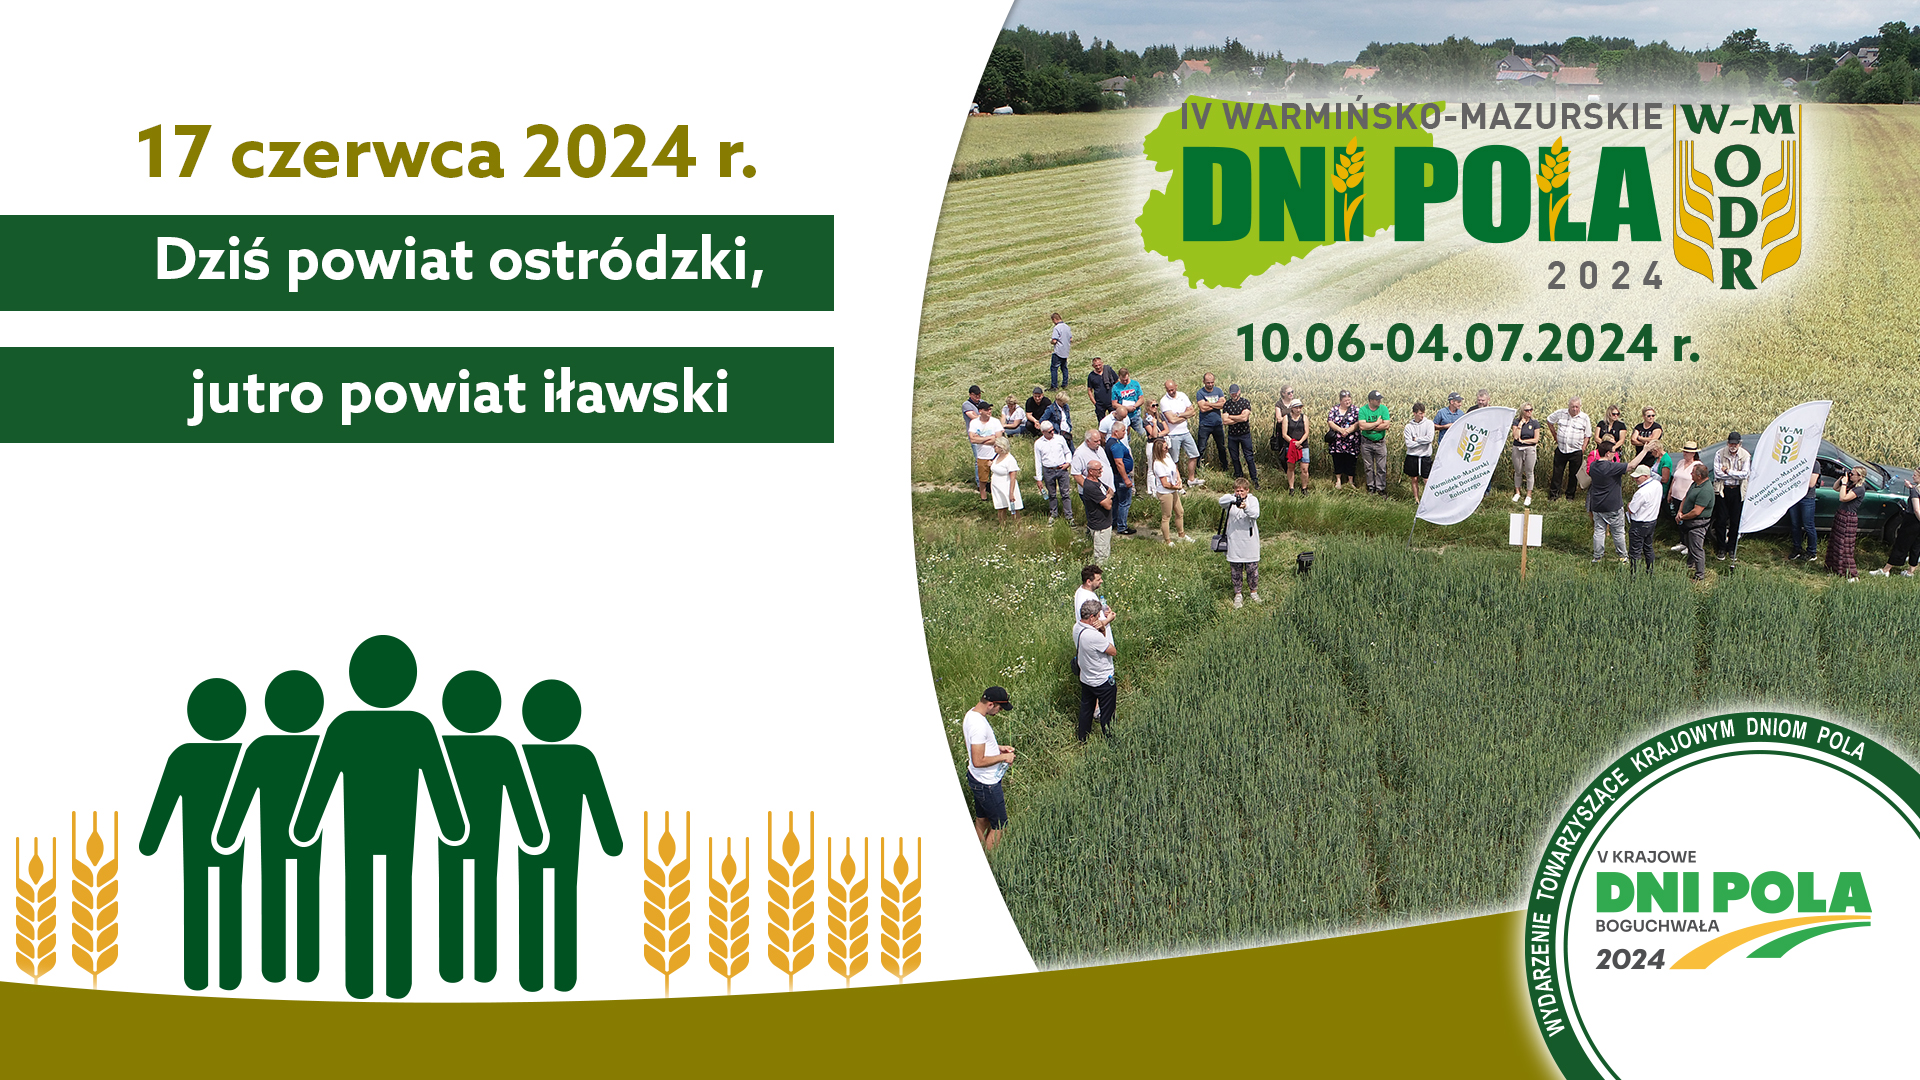 IV Warmińsko-Mazurskie Dni Pola 2024 - 17.06.2024 - jesteśmy na polach w powiecie ostródzkim!